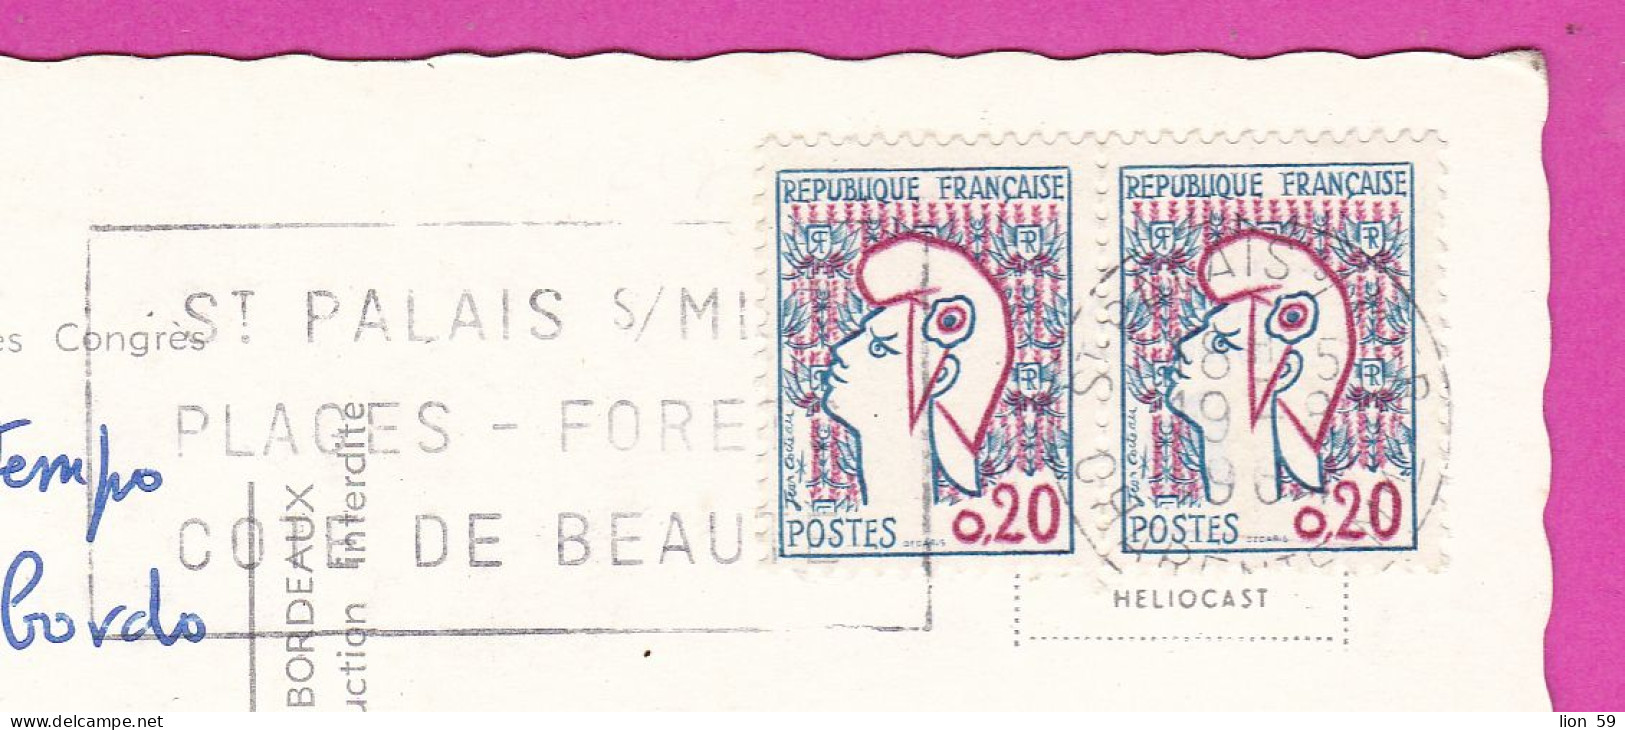 294106 / France - ROYAN Palais Des Congres PC 1968 USED 0.20+0.20 Fr. Marianne De Cocteau Flamme ST PALAIS S/MER PLAGES - Brieven En Documenten